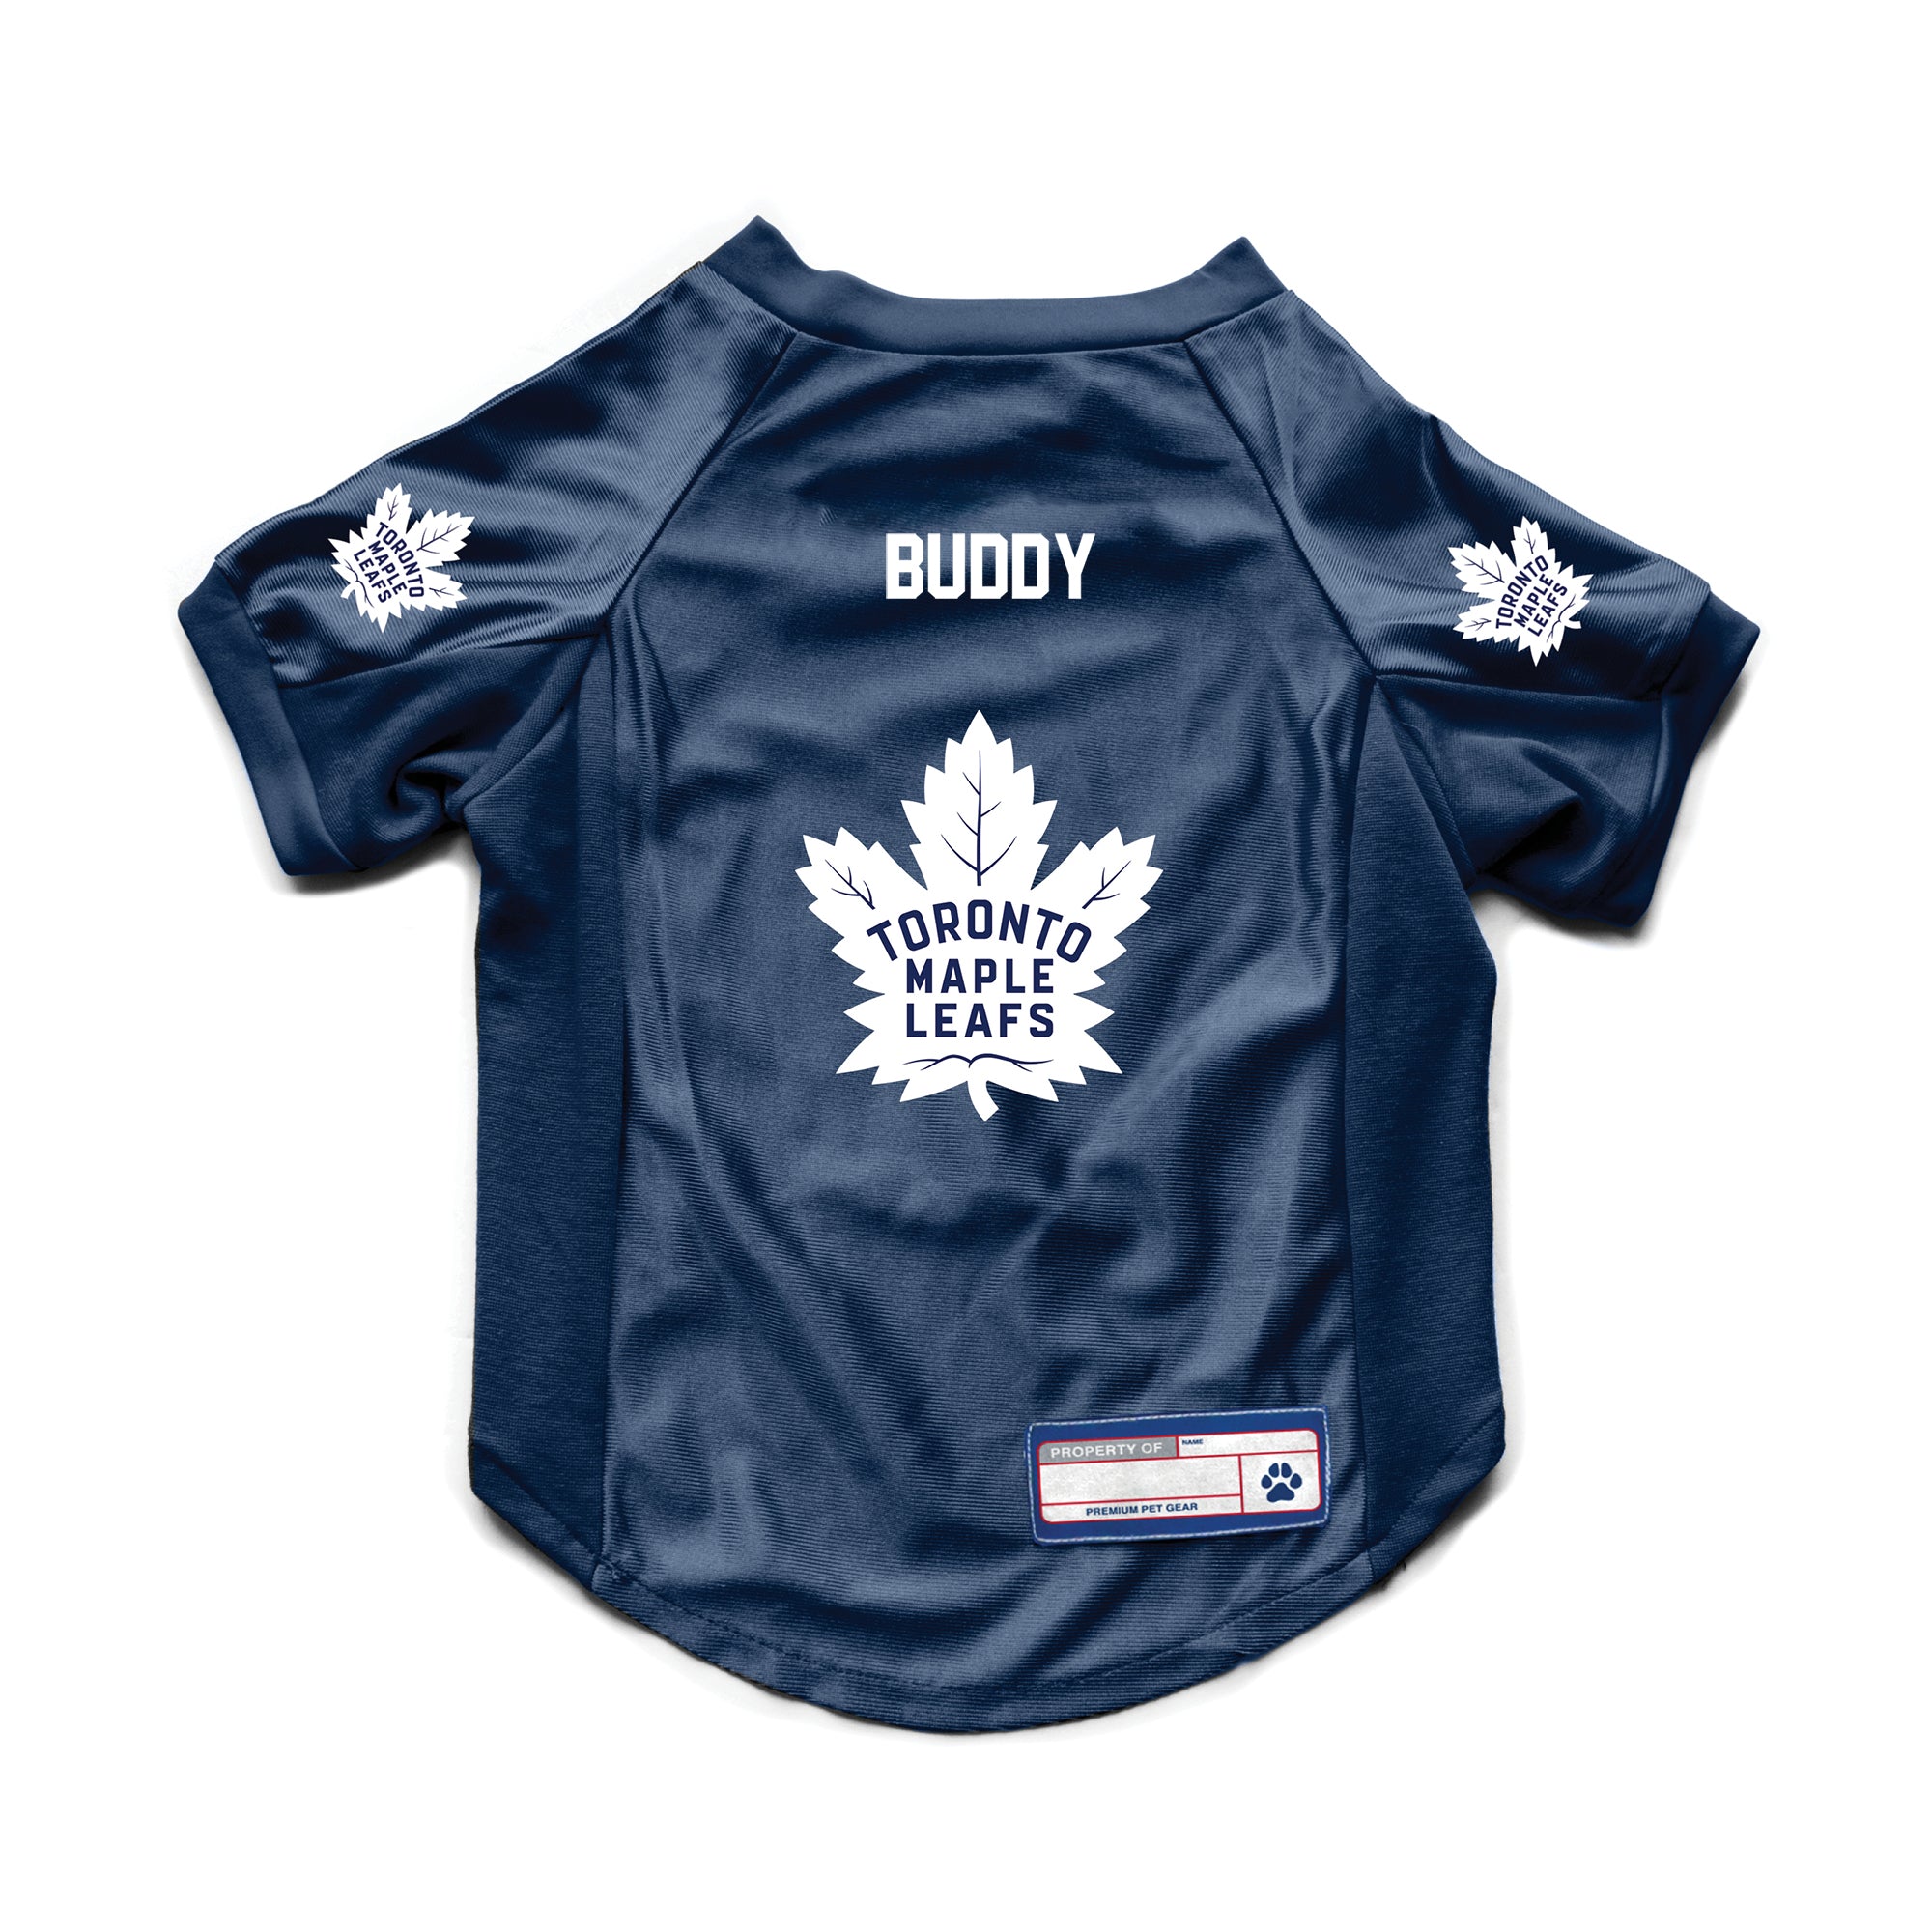 Toronto Maple Leafs Custom Pet Stretch Jersey – Little Earth